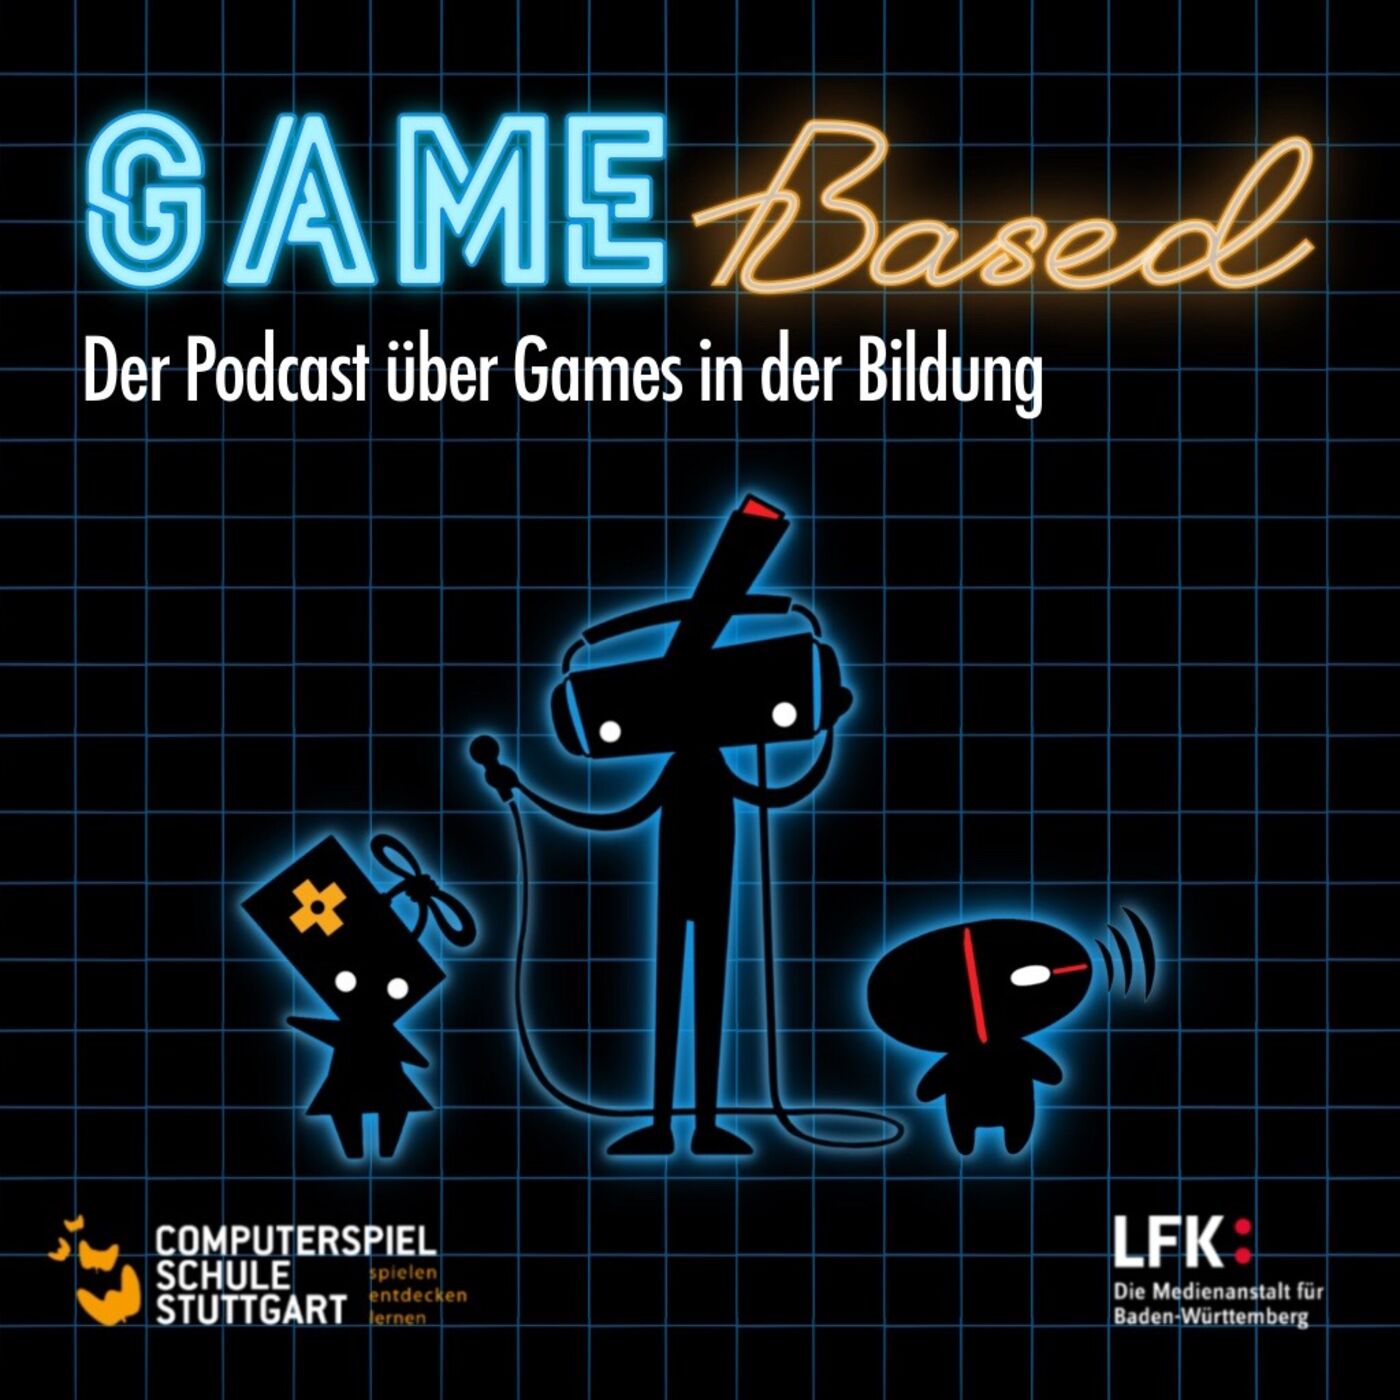 Podcast Game Based Titelbild mit Logo Computerspielschule Stuttgart und LFK